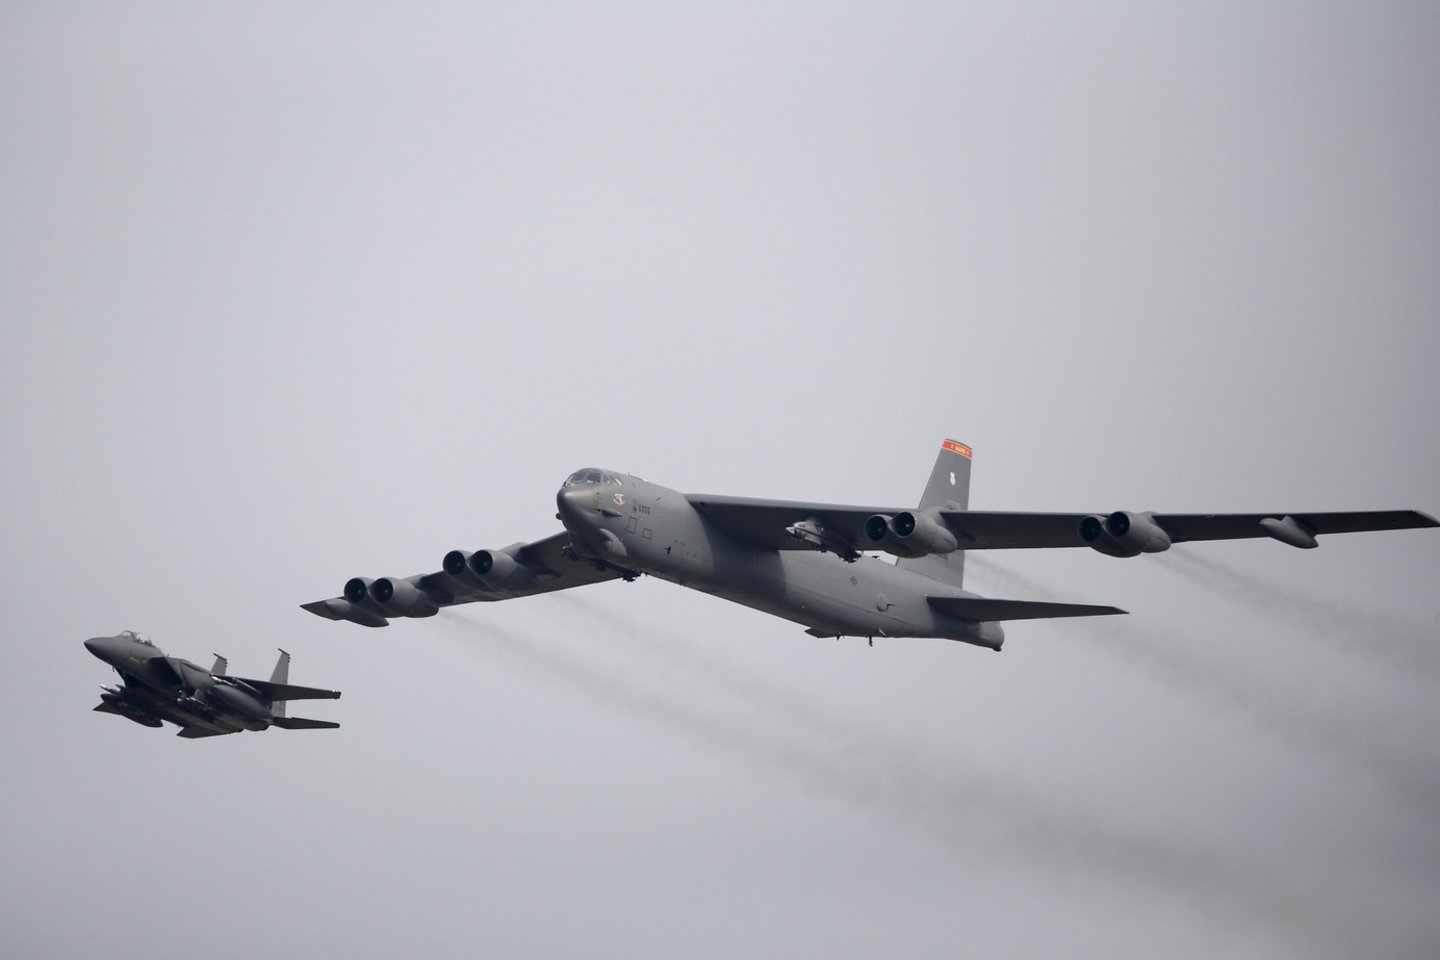  JAV strateginis bombonešis B-52, galinti nešti branduolinius ginklus, atliko skrydį Estijos oro erdvėje, antradienį pranešė šalies žiniasklaida.<br> Reuters/Scanpix nuotr.